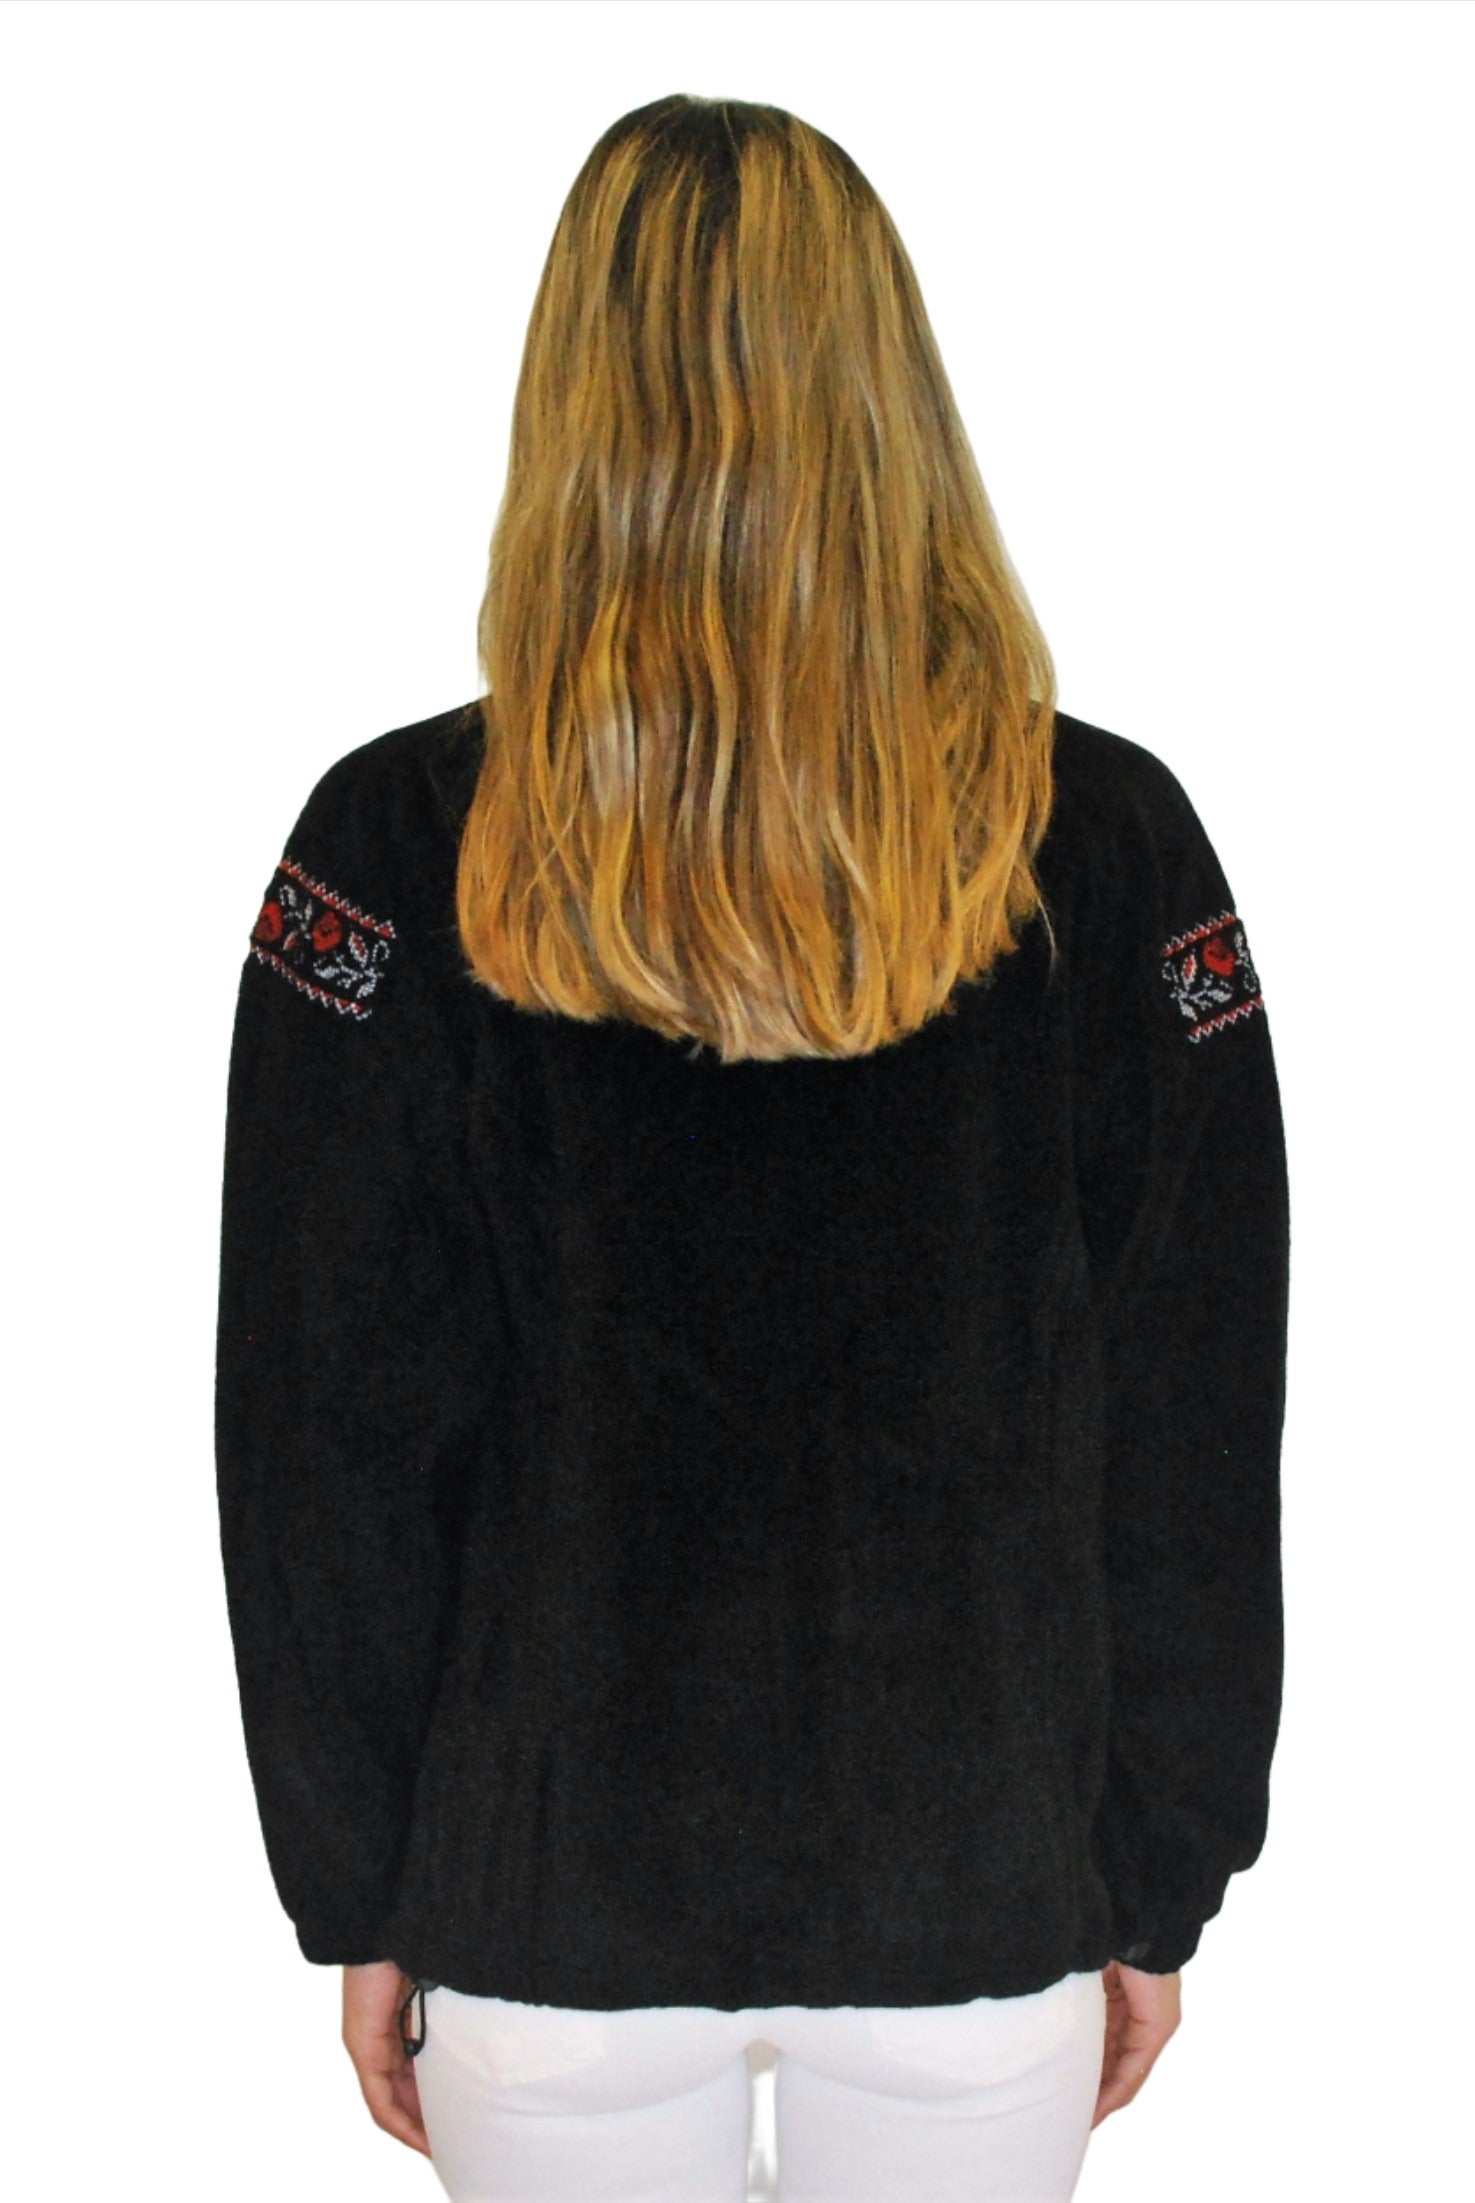 Women's embroidered full-zip fleece jacket. Black